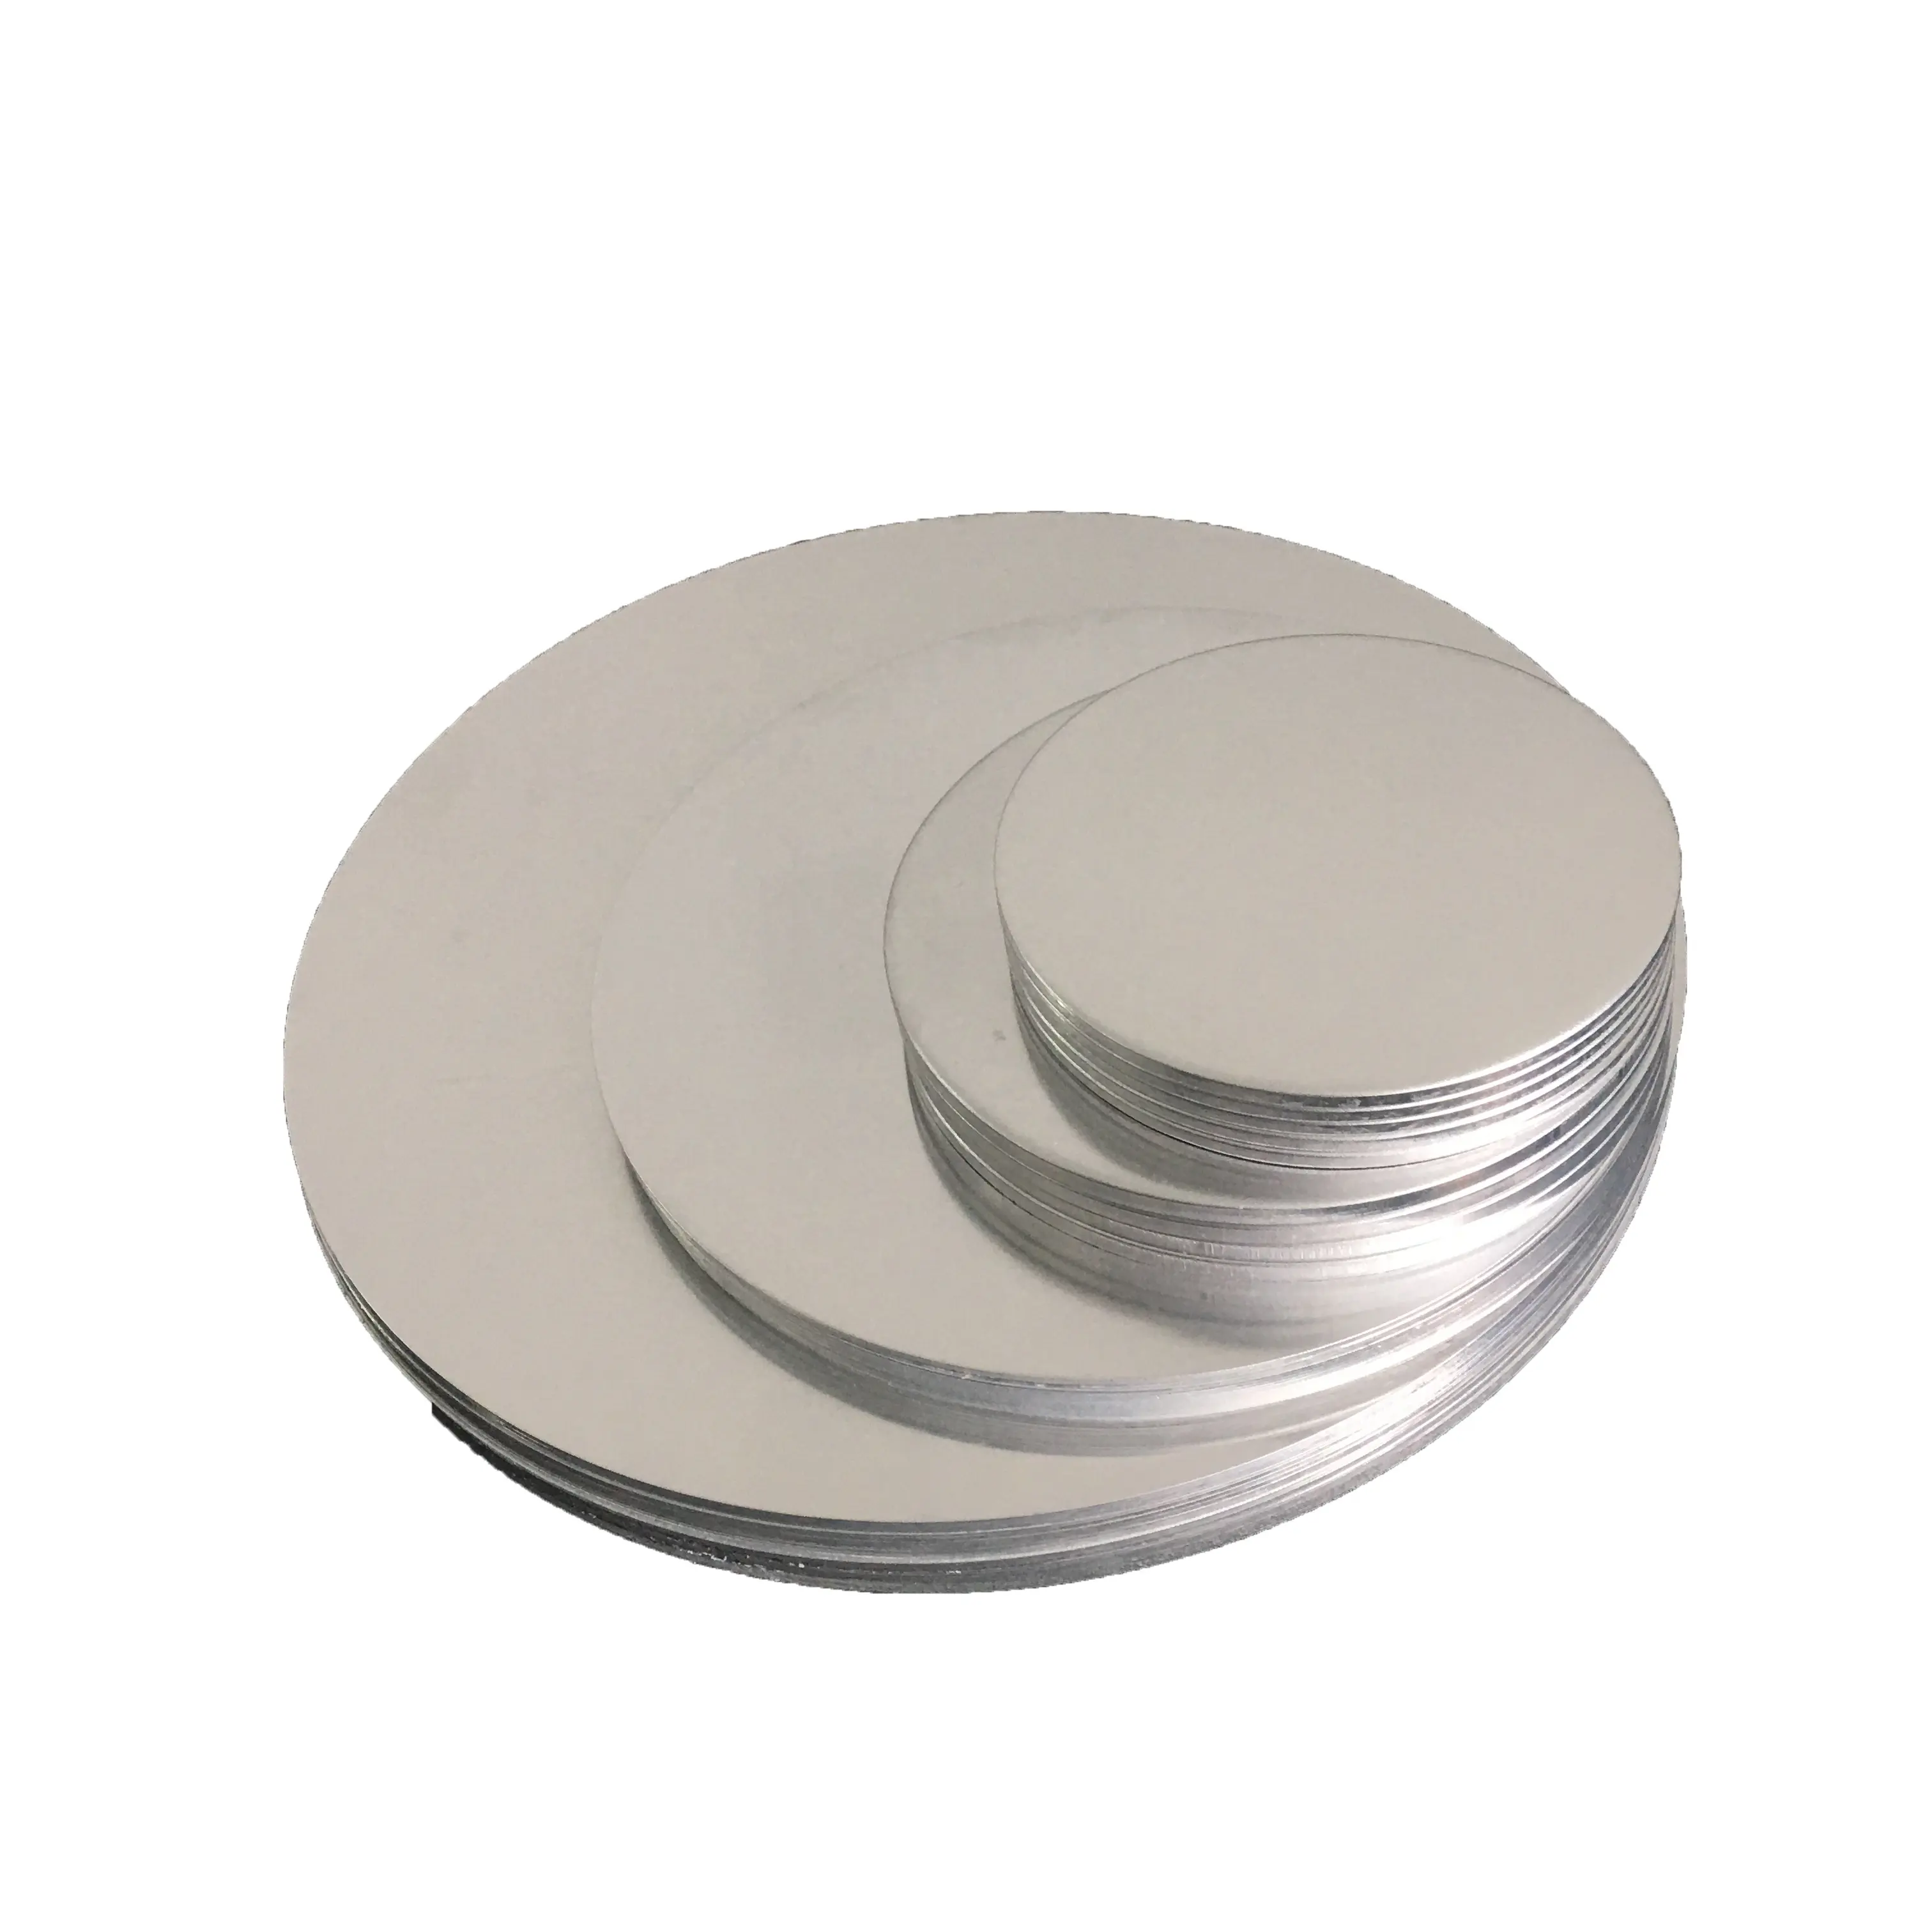 Прямая продажа цена алюминиевый круг 1060 алюминиевый круг приготовления пищи посуда производитель